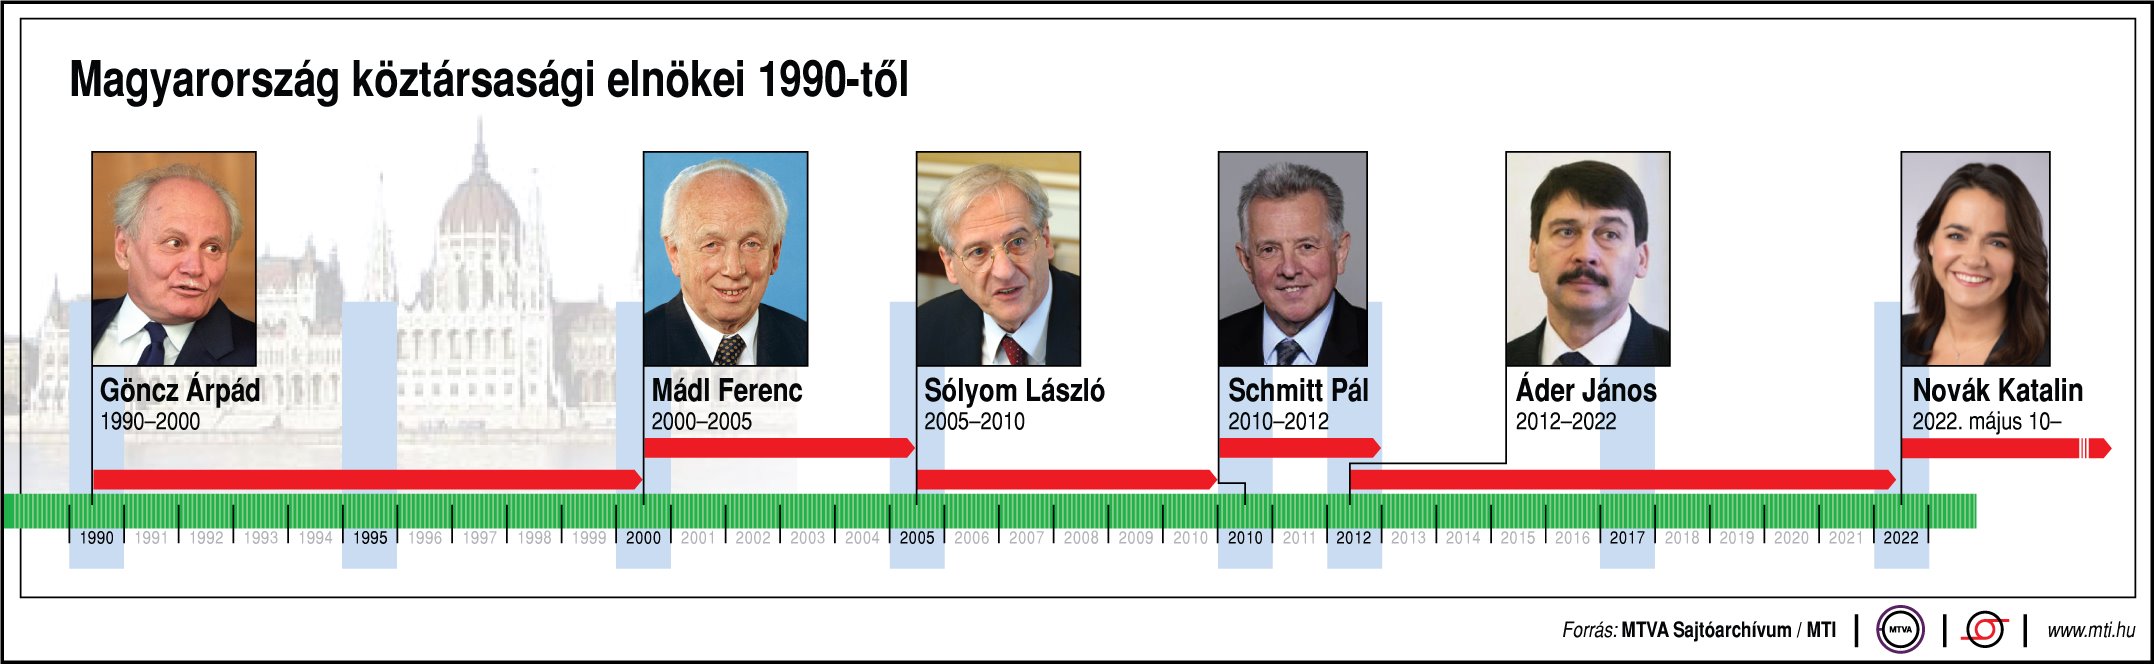 président hongrois depuis 1990